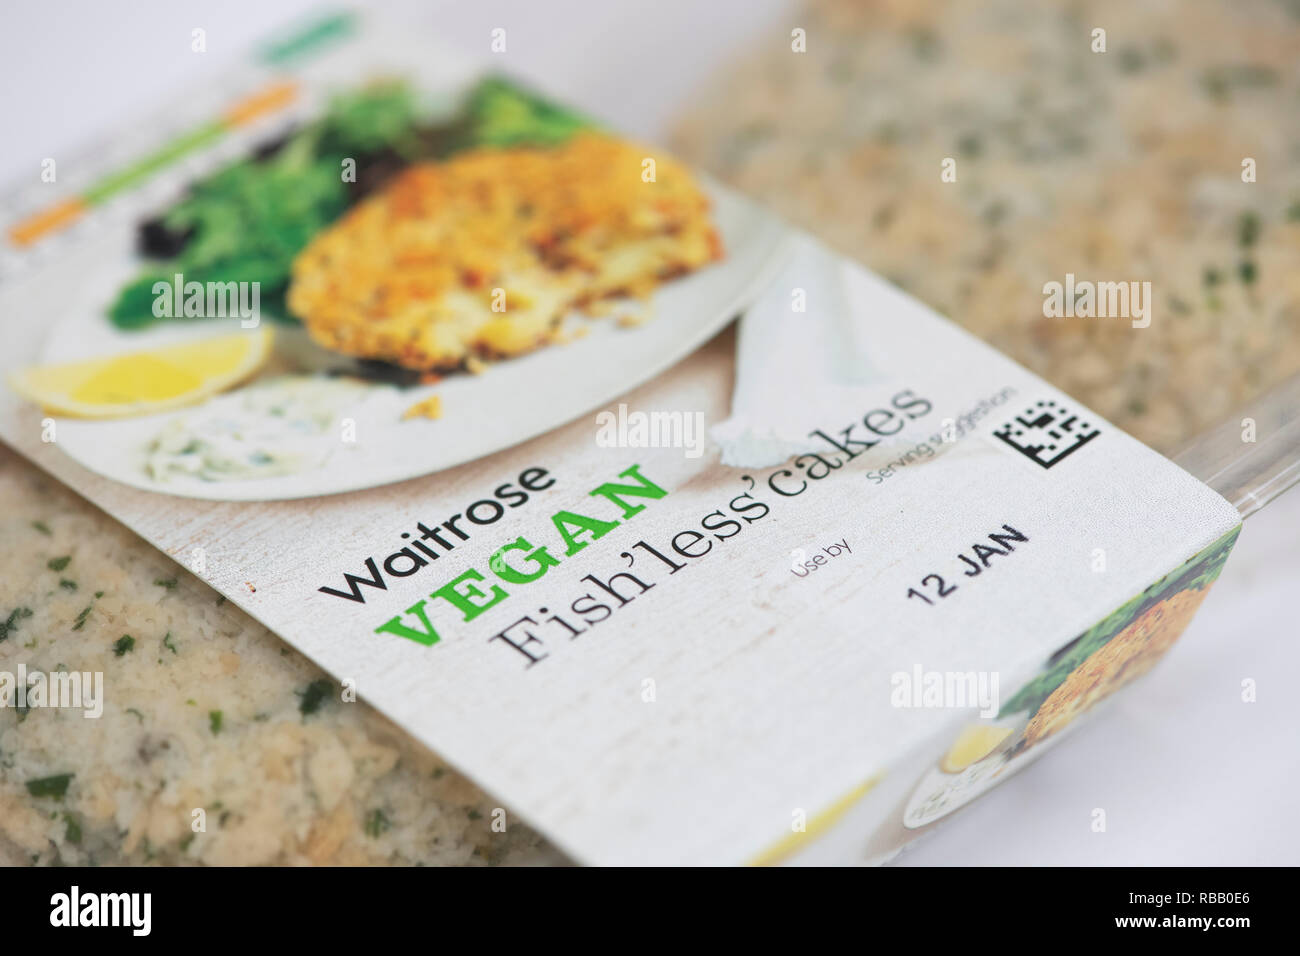 Waitrose Vegan fish'moins de paquets de gâteaux avec étiquette vegan. UK Banque D'Images